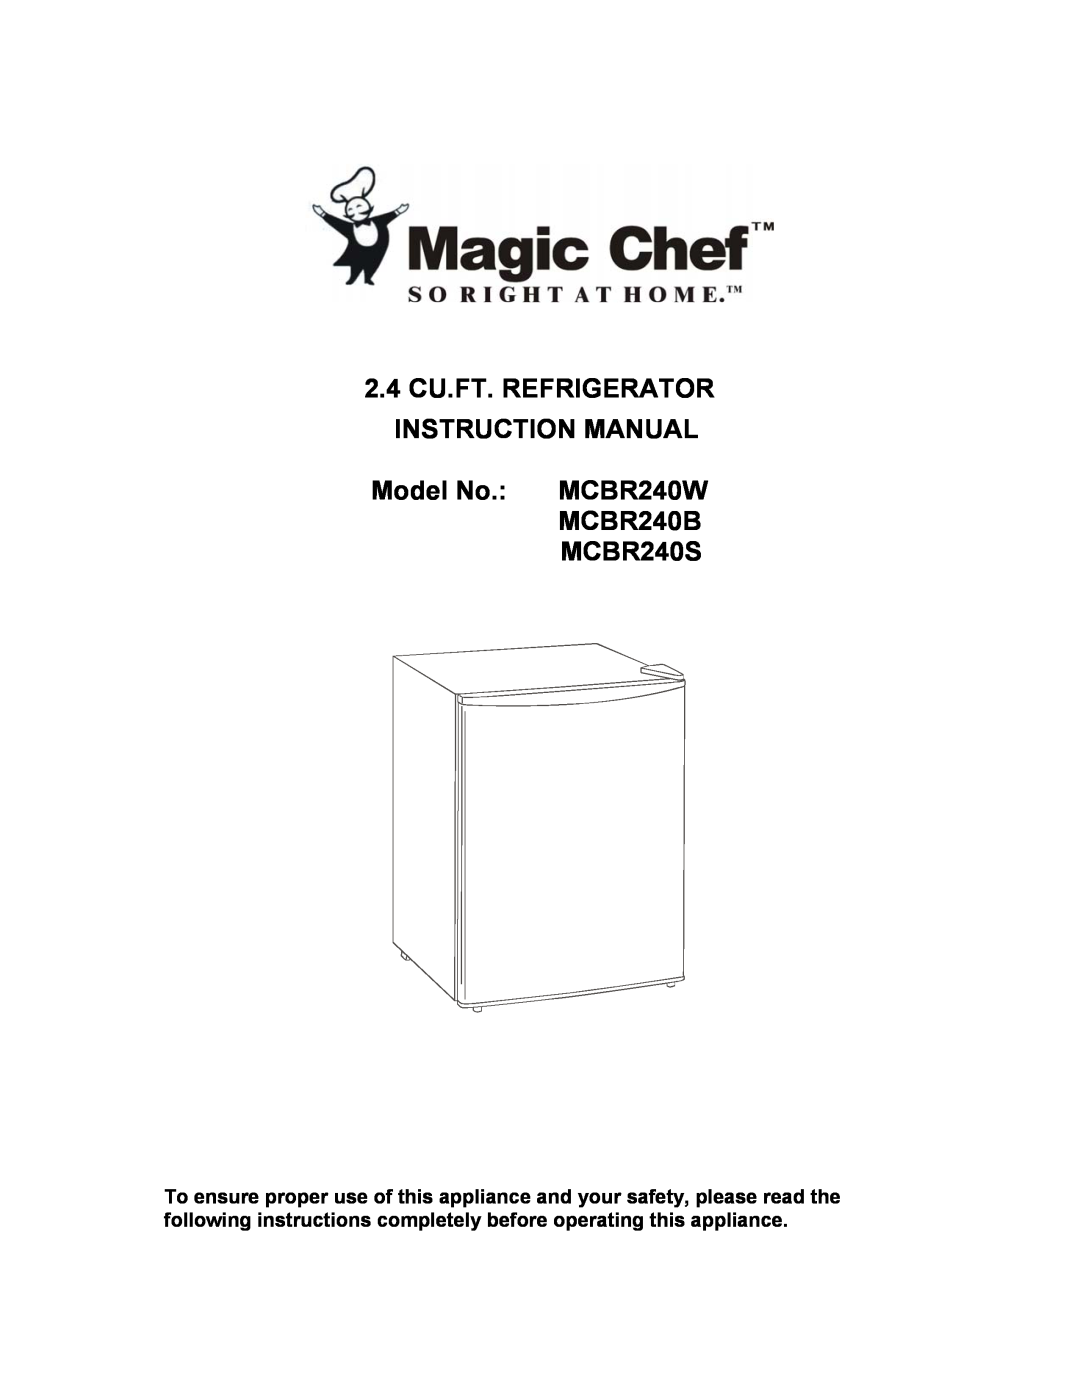 Magic Chef instruction manual Model No. MCBR240W MCBR240B MCBR240S 